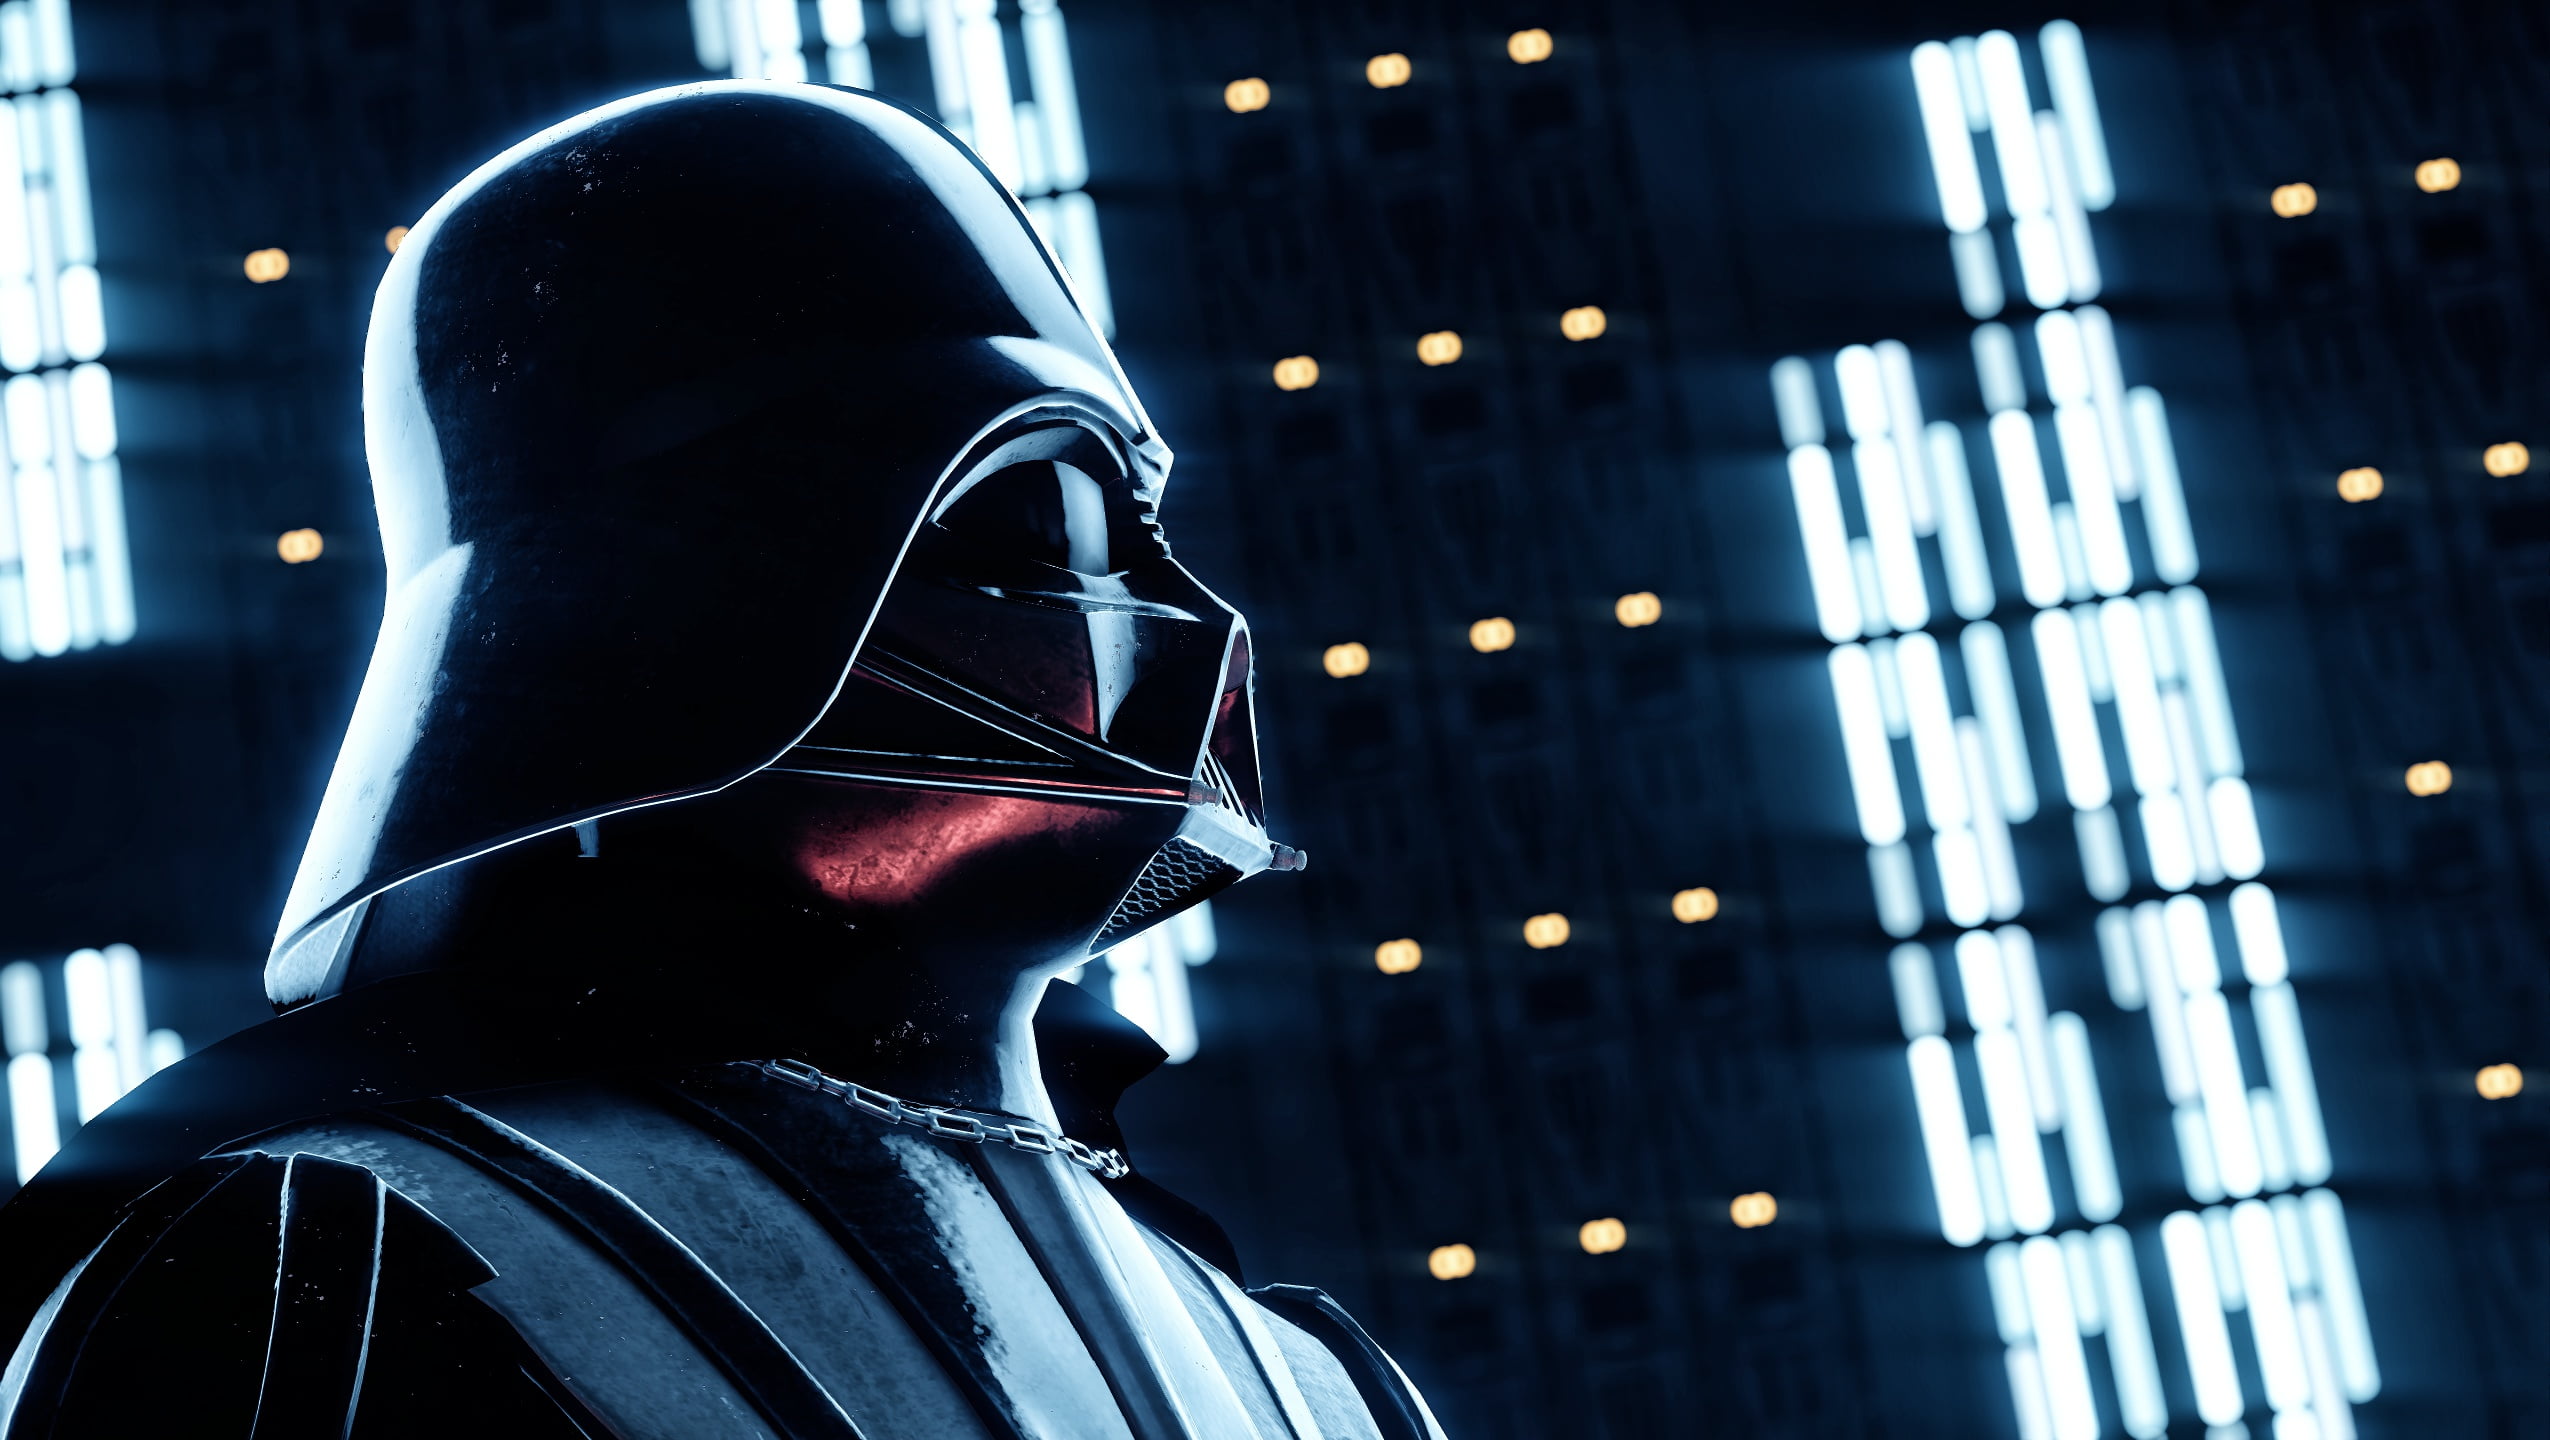 Star Wars Darth Vader digital wallpaper